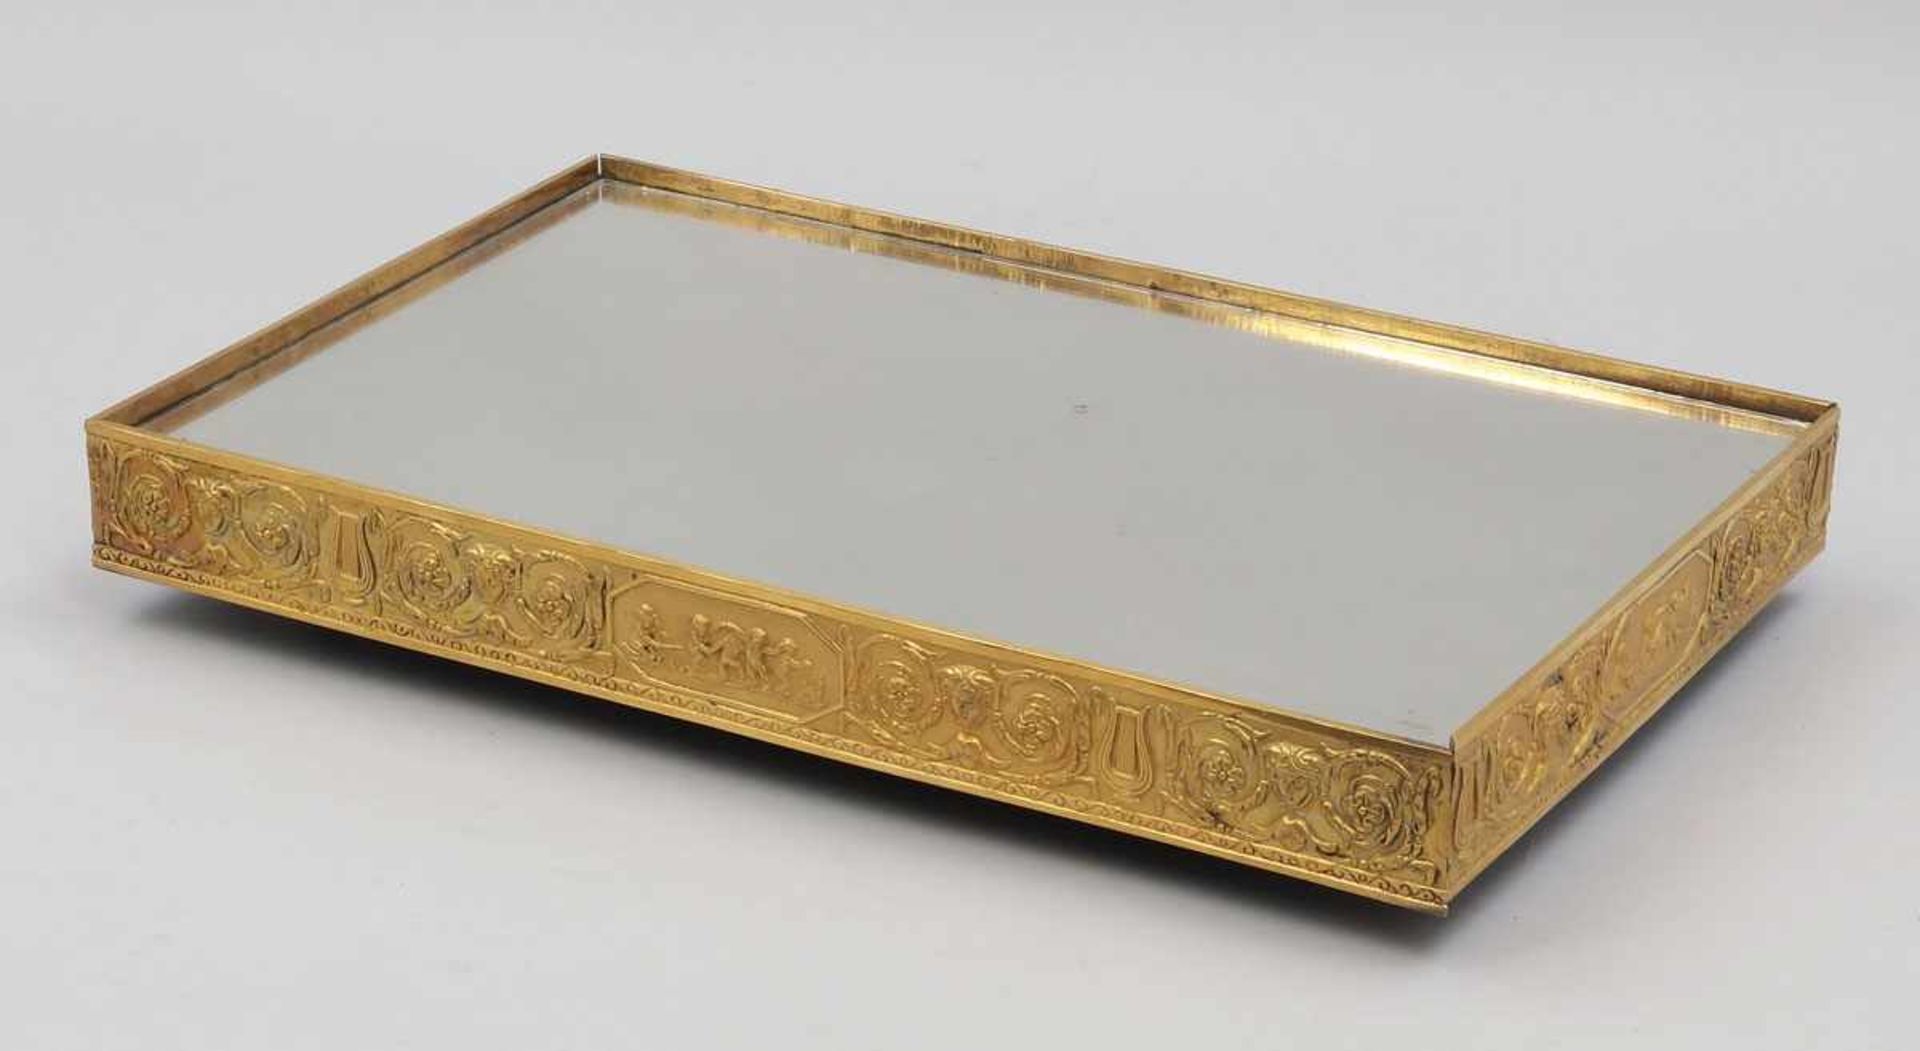 Tischdekoration mit Spiegel 19. Jahrhundert. Bronze. Spiegelglas. 7 x 48 x 30 cm. Rechteckige Form